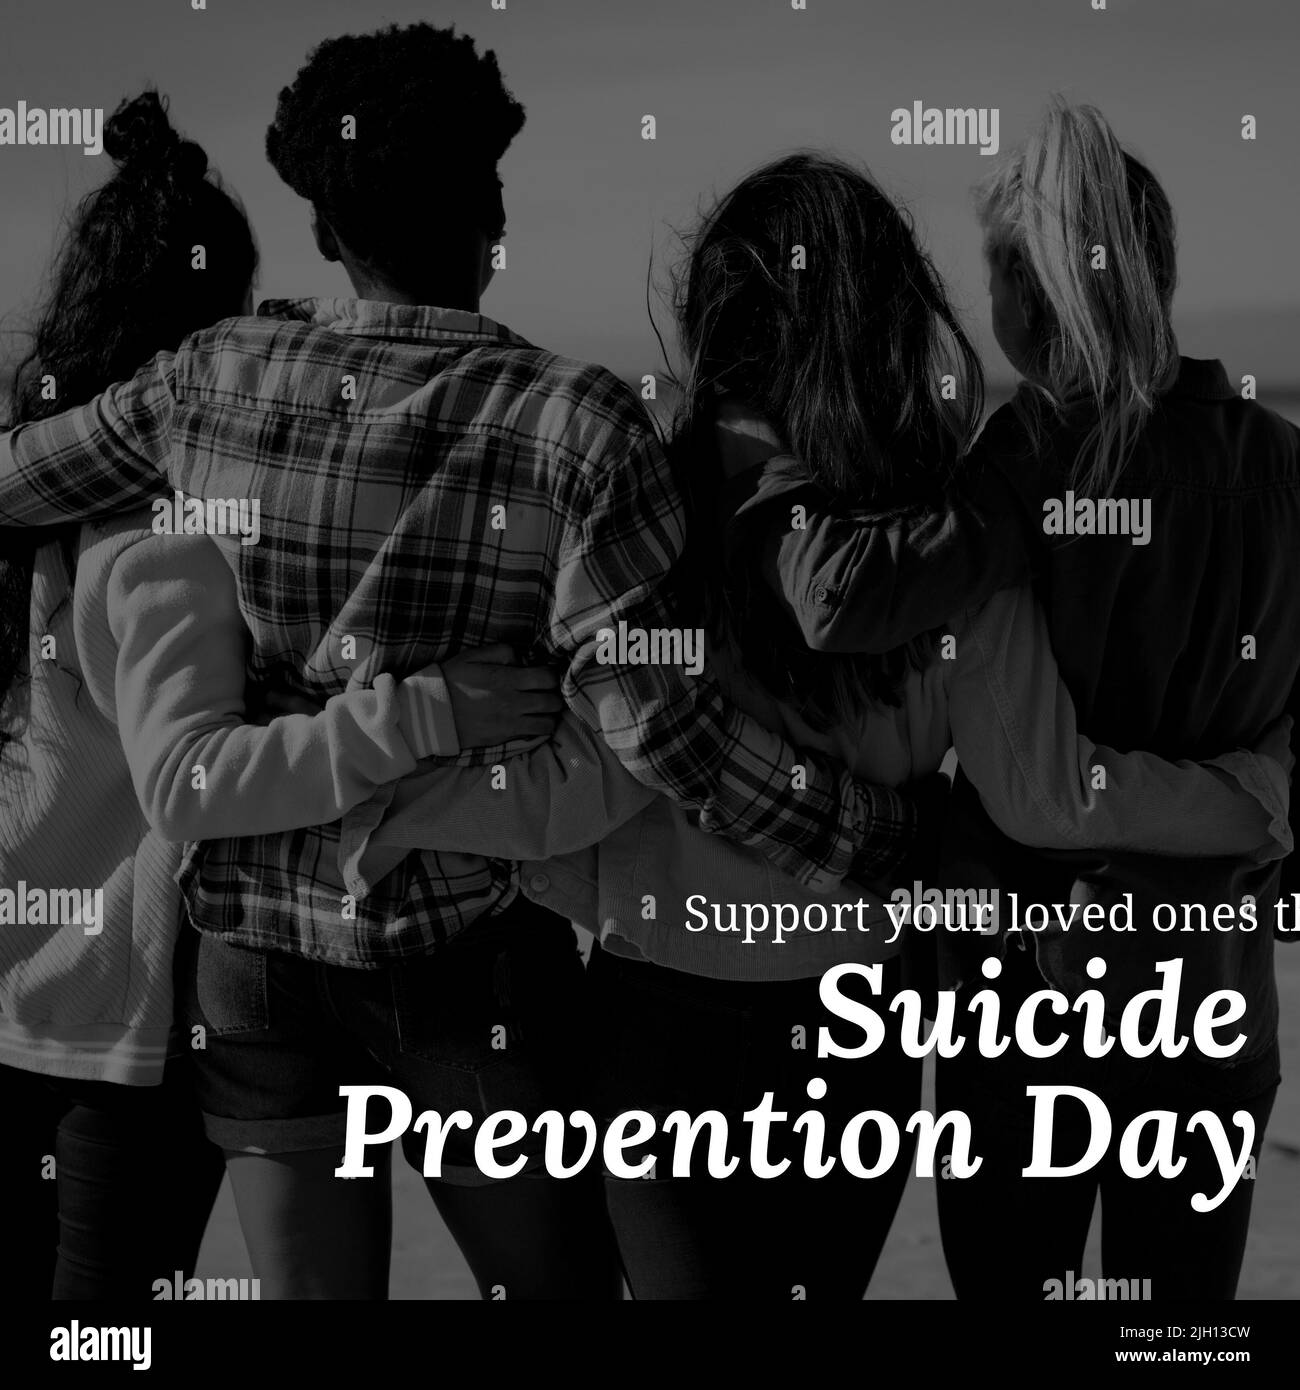 Image carrée du texte de la journée de prévention du suicide sur divers groupes d'amis en noir et blanc Banque D'Images